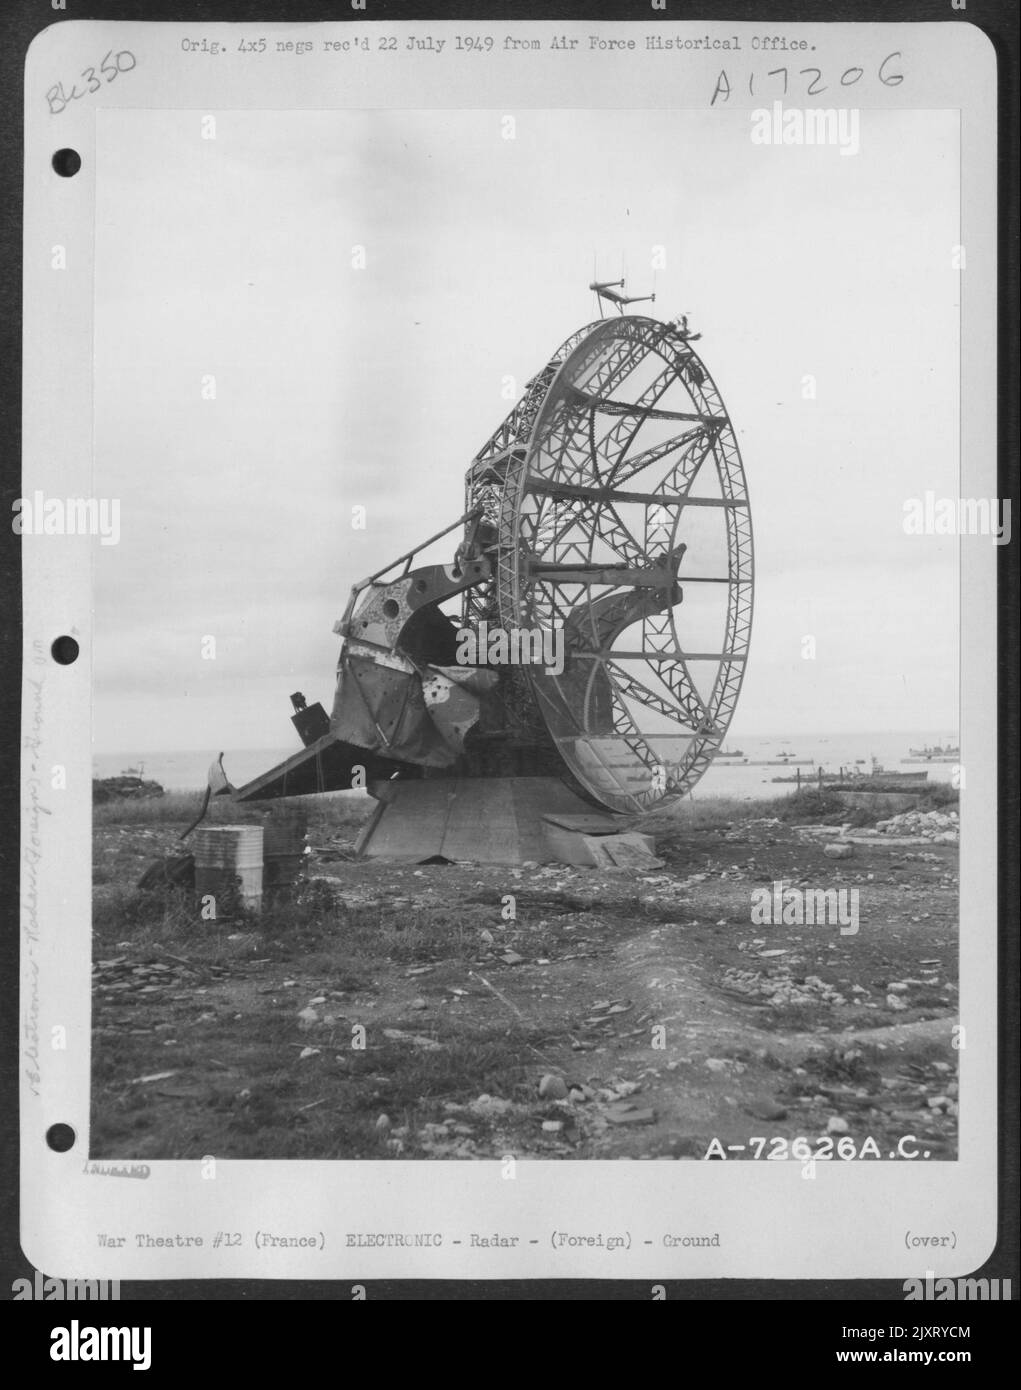 Radarinstallation Des Deutschen Riesengebirges Würzburg Am Strand Der Normandie, Frankreich. 22. Juni 1944. [Würzburger Rieser Fumg 65 Radar.] Stockfoto